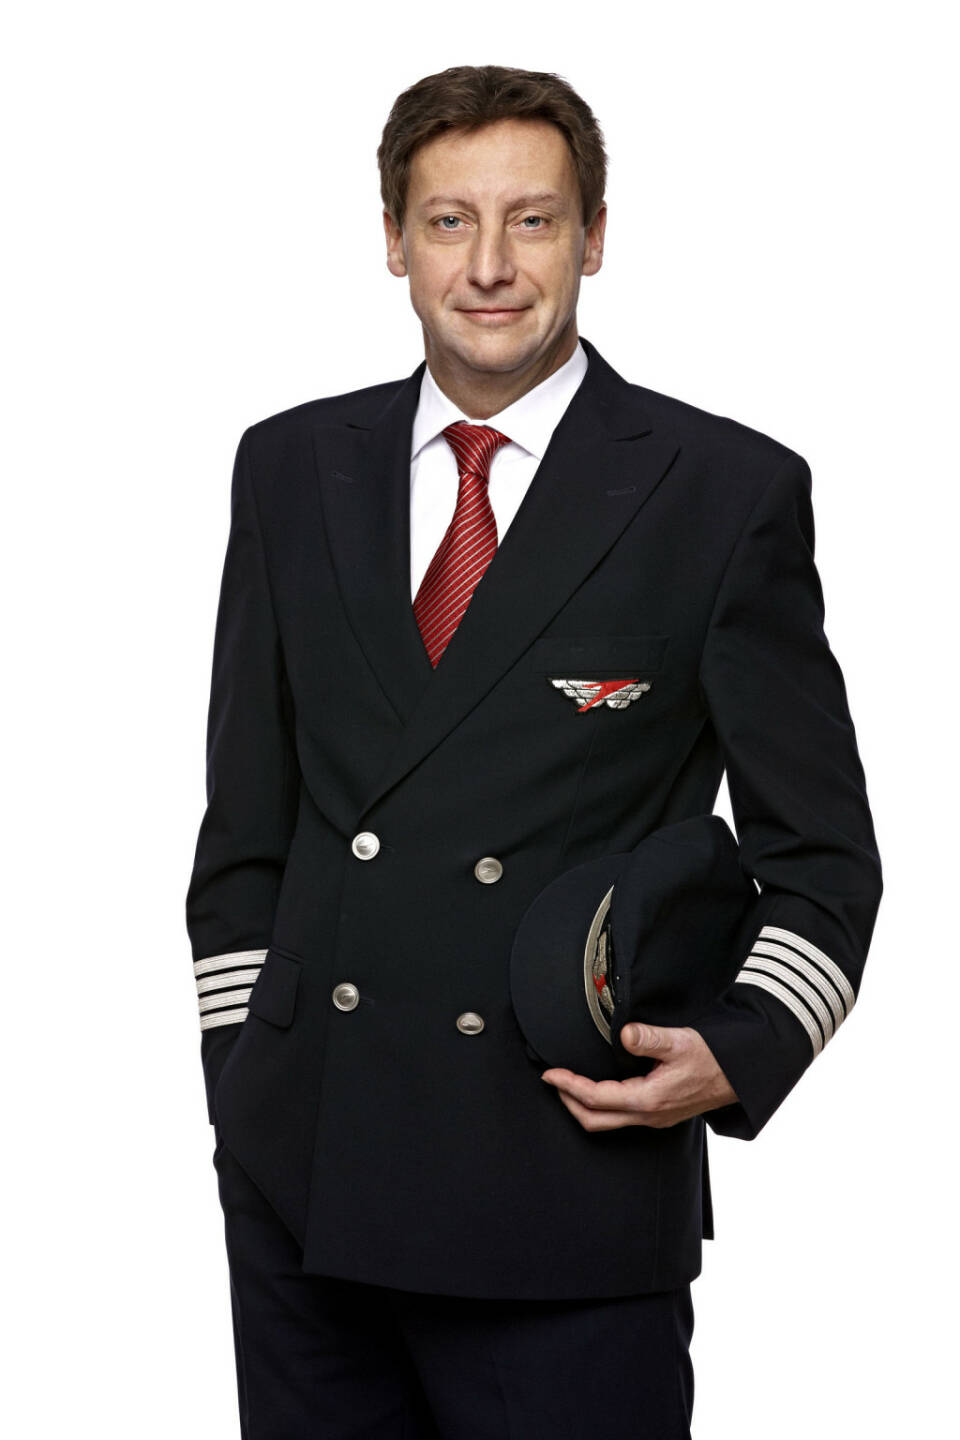 Gerhard Pitsch (48) ist neuer Chefpilot bei Austrian Airlines. Er wird per 1. Jänner 2014 die Nachfolge von Rolf Brand antreten, der mit Jahreswechsel zur SWISS zurückkehrt. Pitsch übernimmt damit als „Postholder Flight Operations“ die Leitung des Flugbetriebs der Tyrolean Airways, in der der gesamte Flugbetrieb der Austrian Airlines gebündelt ist.